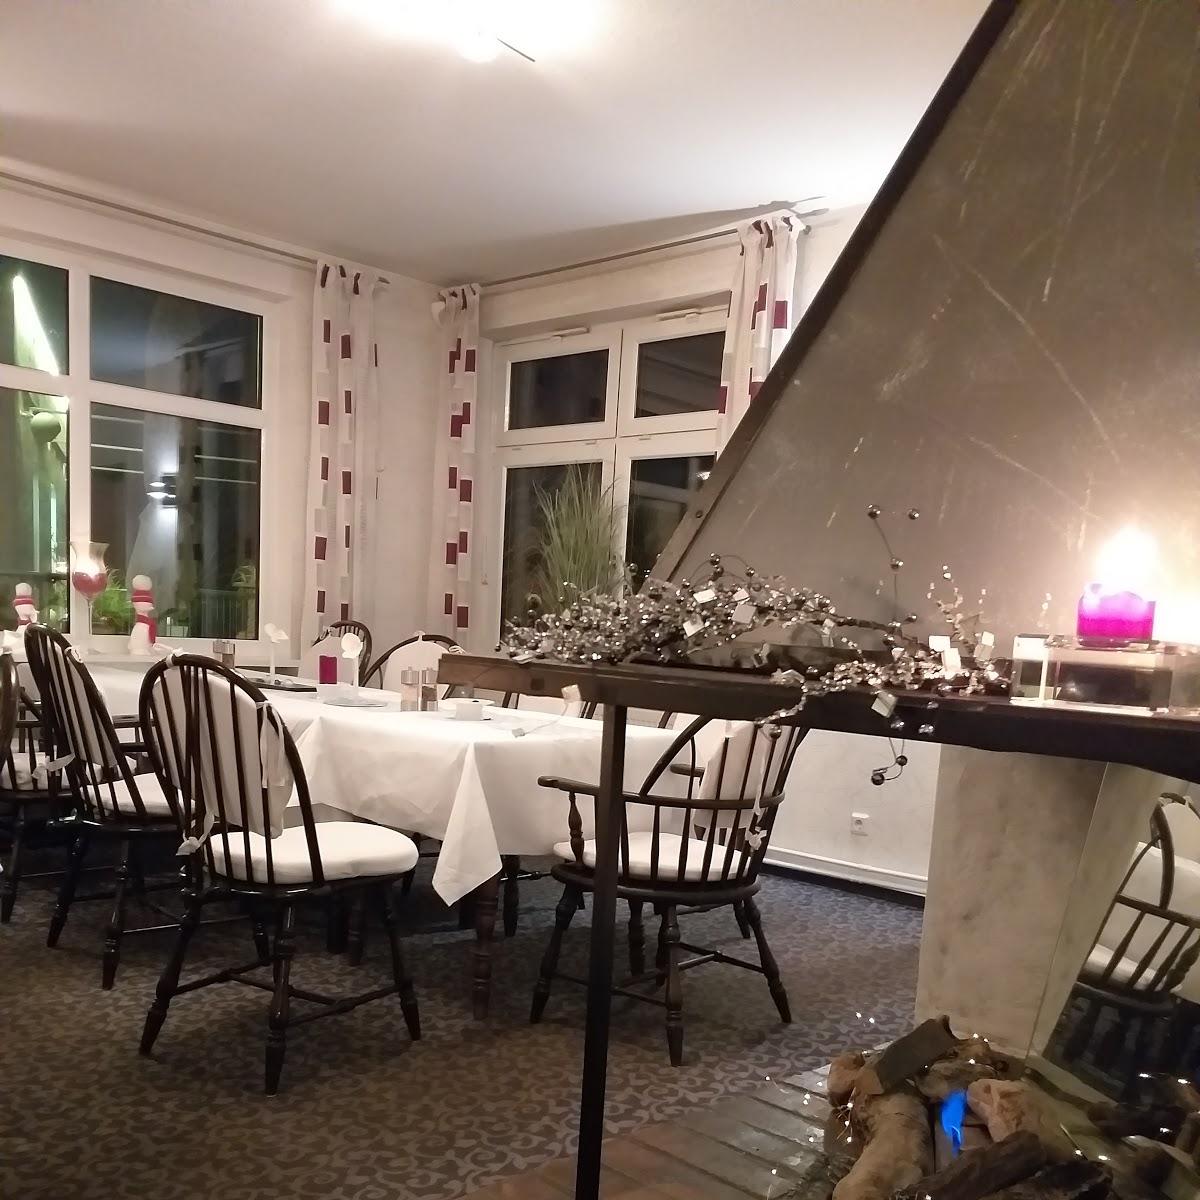 Restaurant "Kleine Auszeit" in  Braunlage